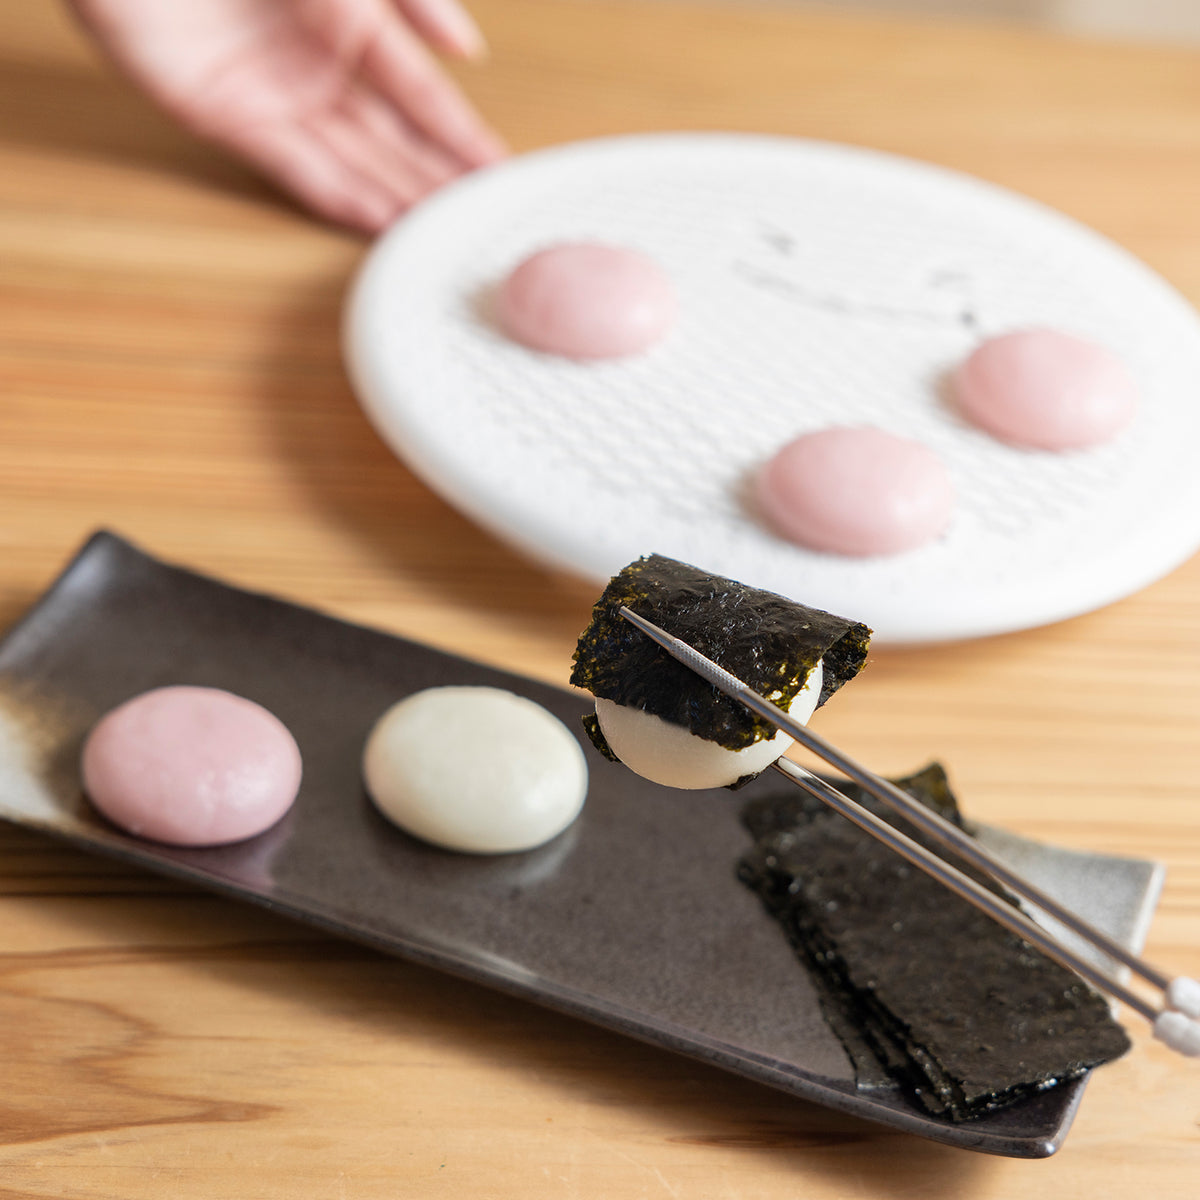 Akebono Polypropylene Sushi Rolling Mat - Globalkitchen Japan